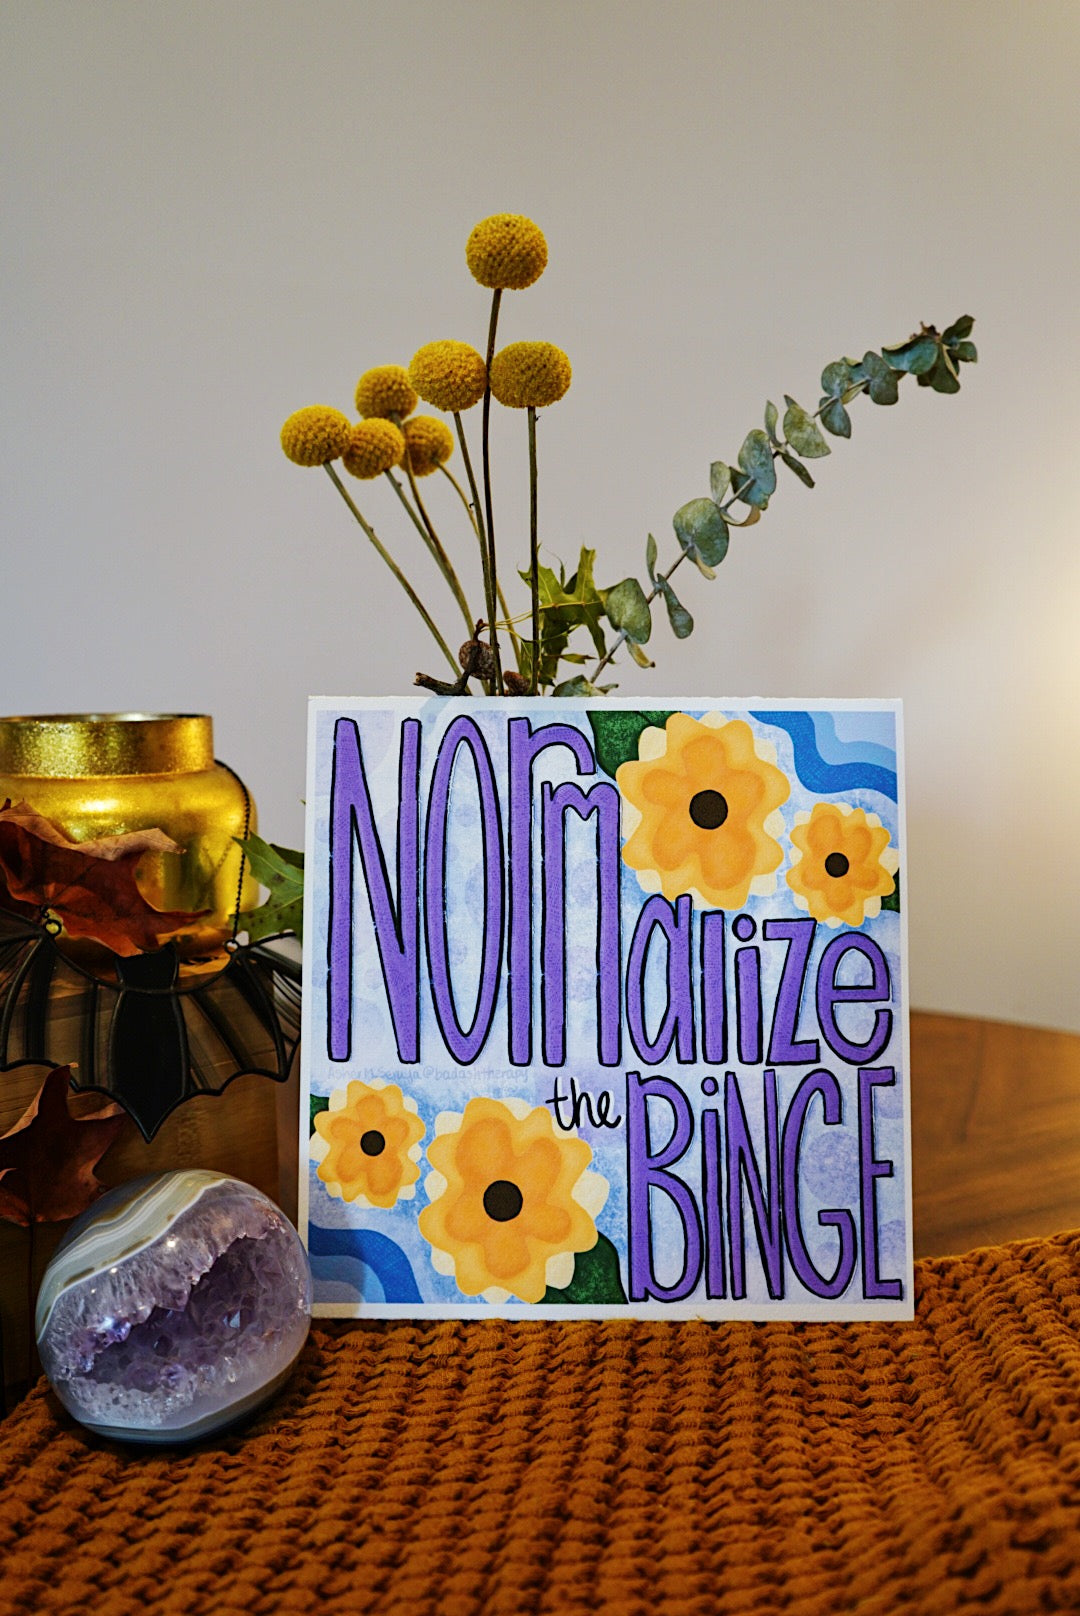 Normalize the Binge - Art & Illustration